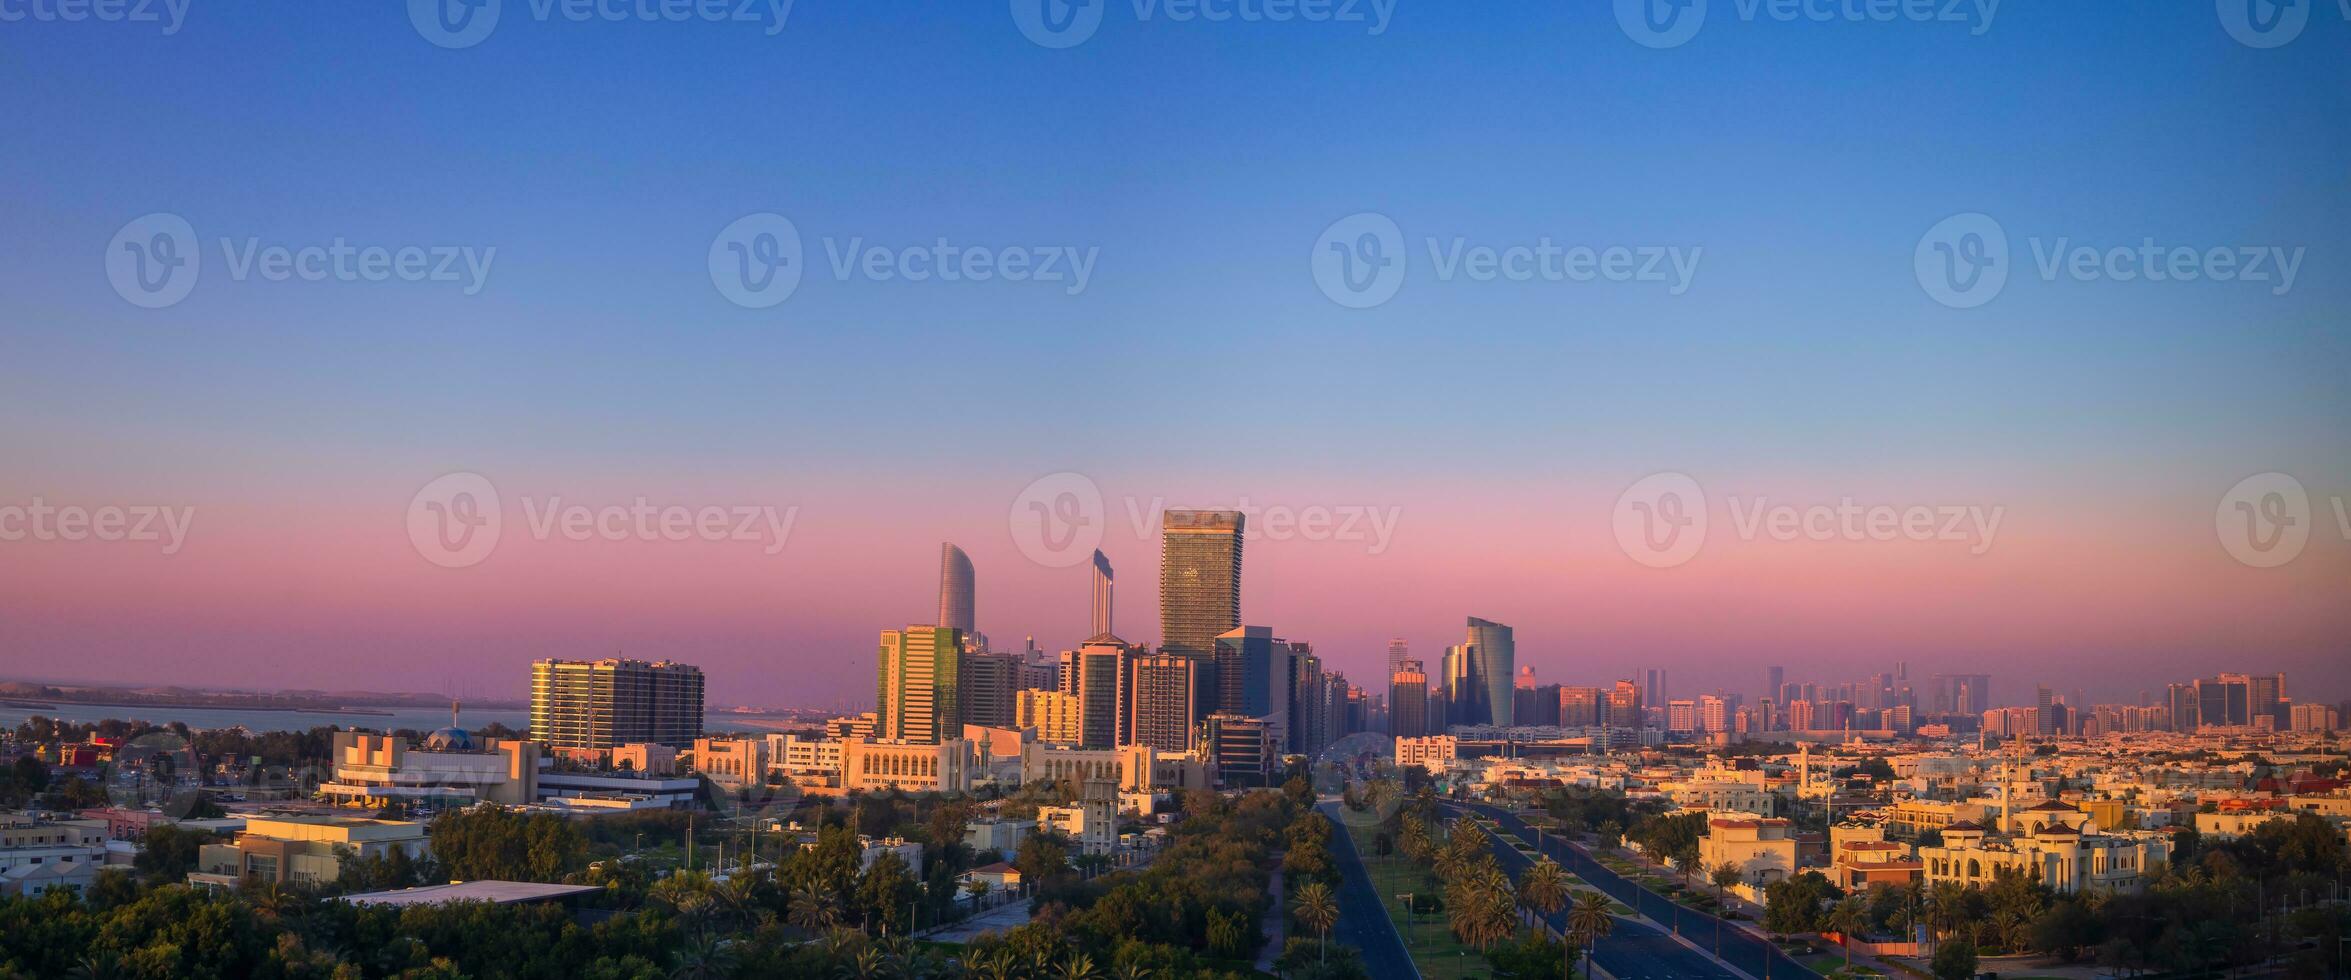 Vereinigte Arabische Emirate, vereinigt arabisch Emirate, abu Dhabi Innenstadt Panorama und finanziell Center Horizont foto